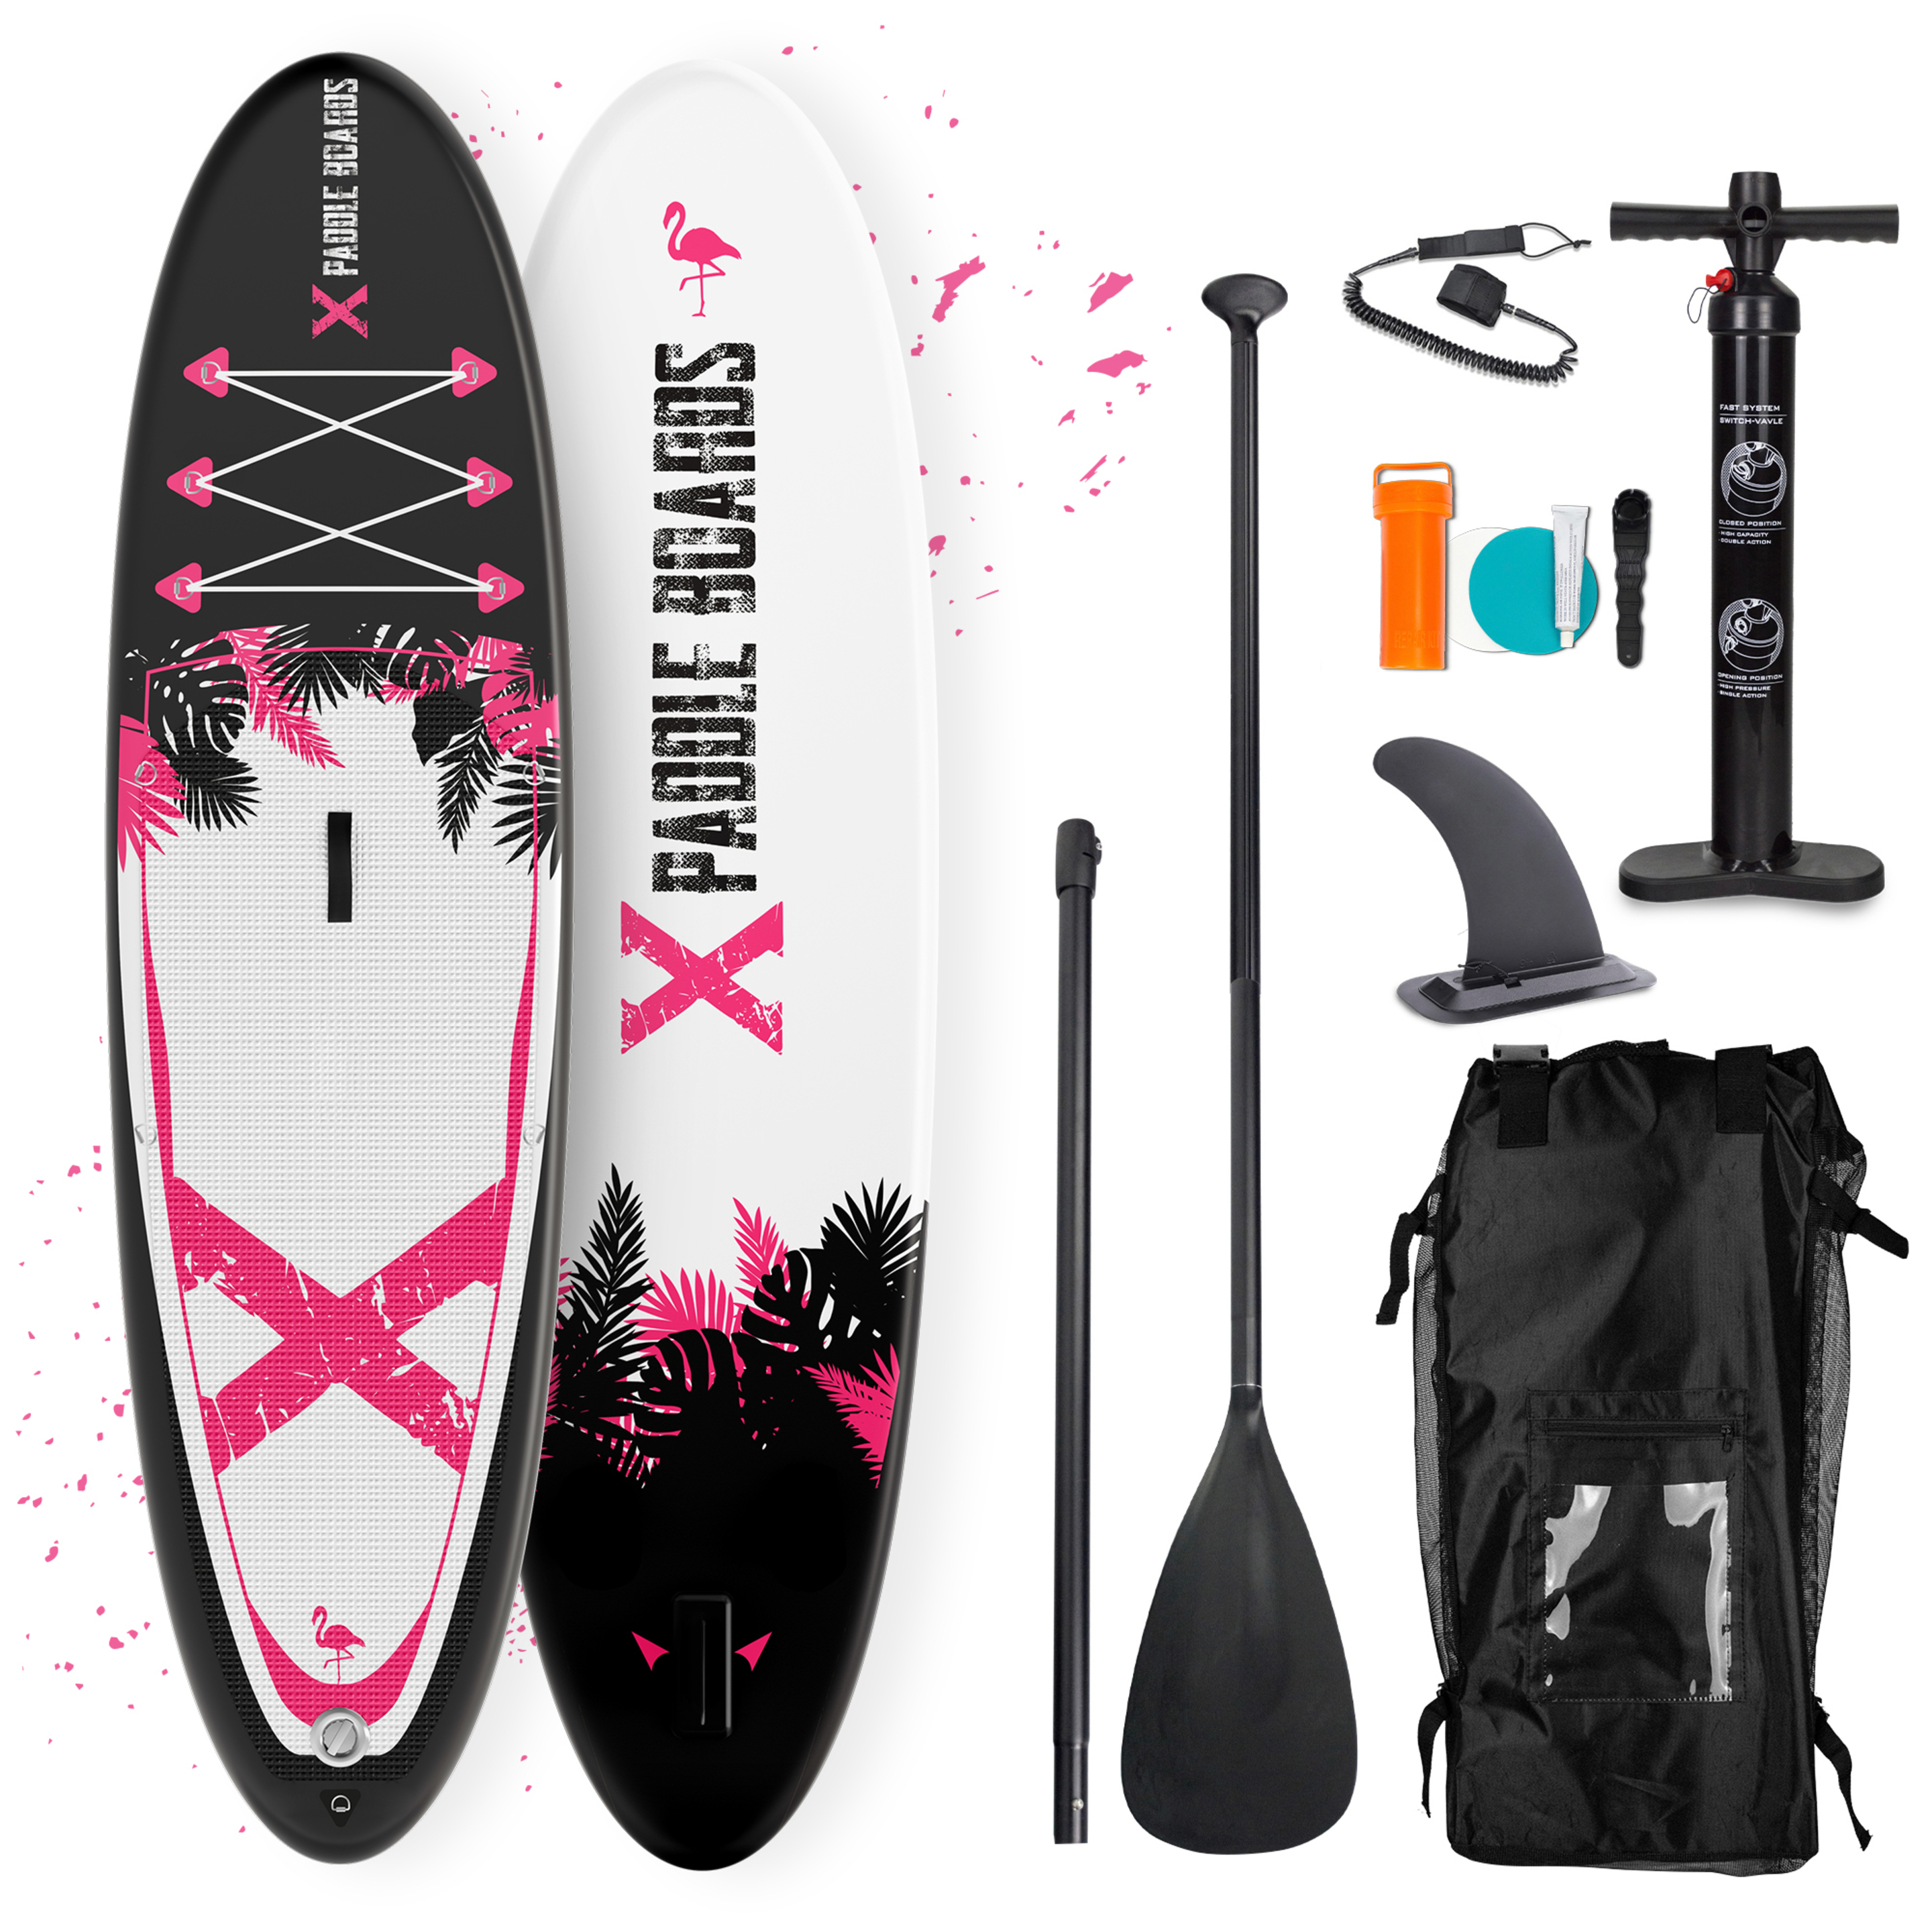 Paddle Insuflável X-flamingo X-paddleboards | 10'2 X 32" X 6" (310 X 82 X 15cm)